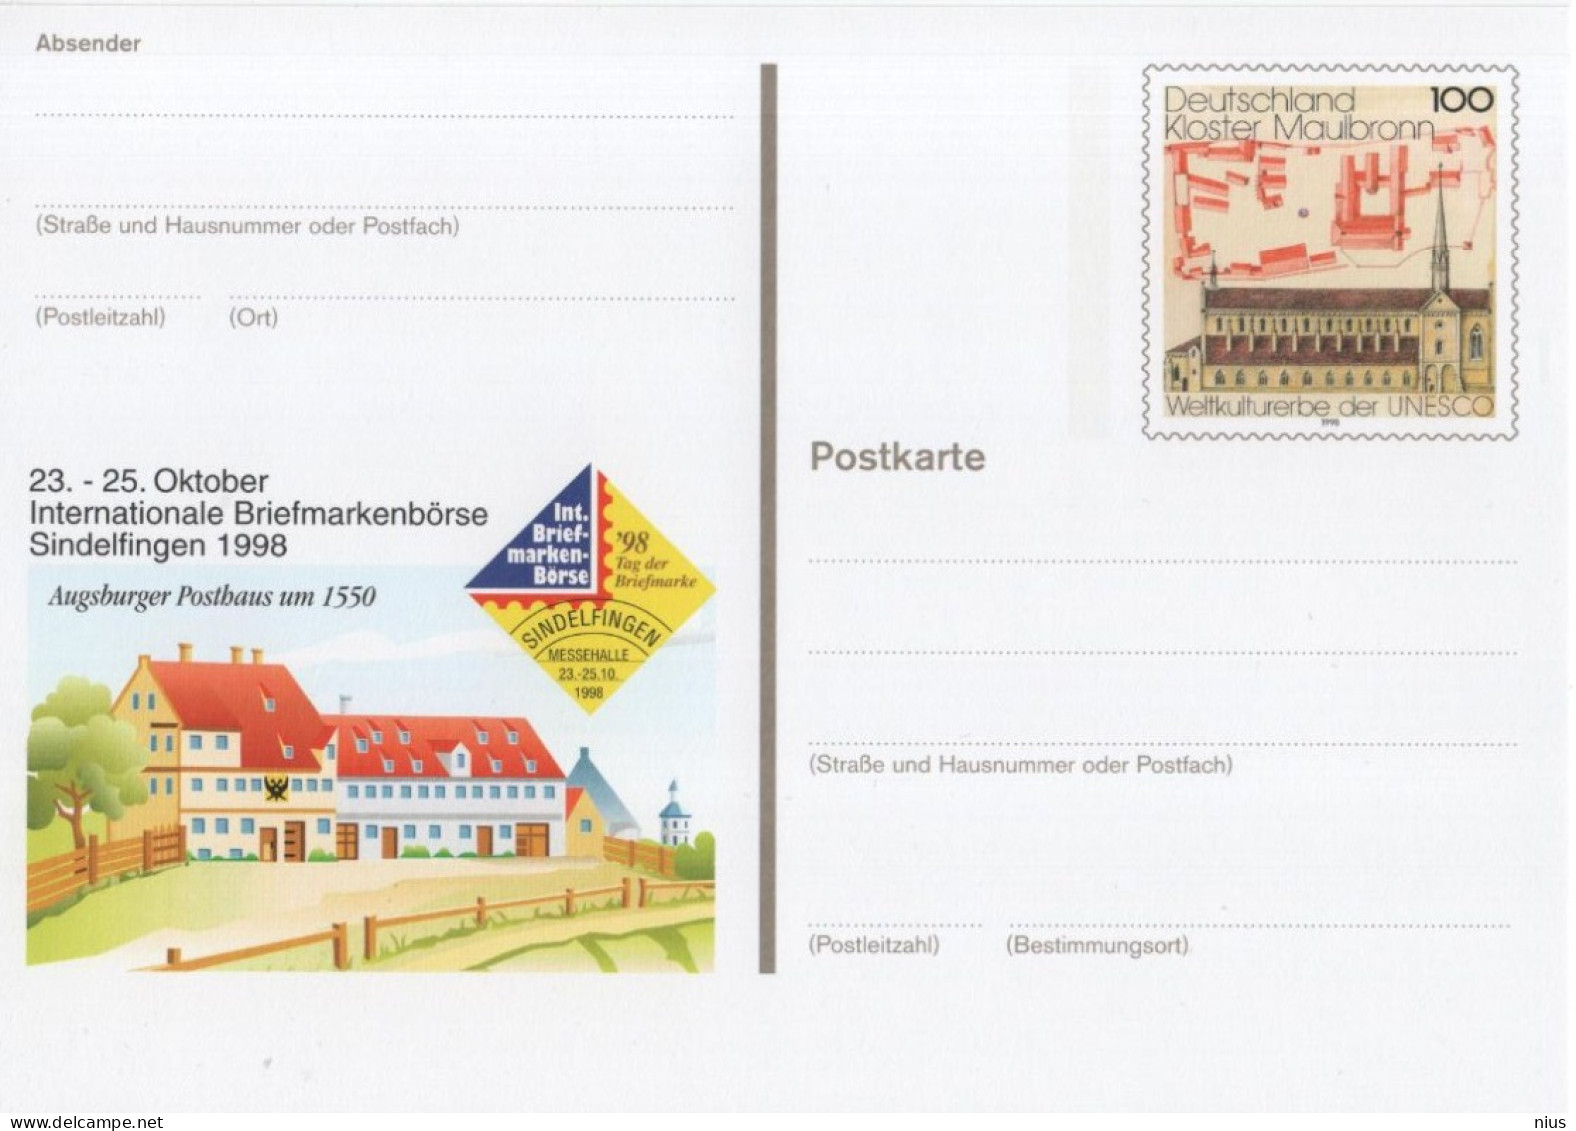 Germany Deutschland 1998 Kloster Maulbronn, Briefmarkenborse Sindelfingen - Postcards - Mint